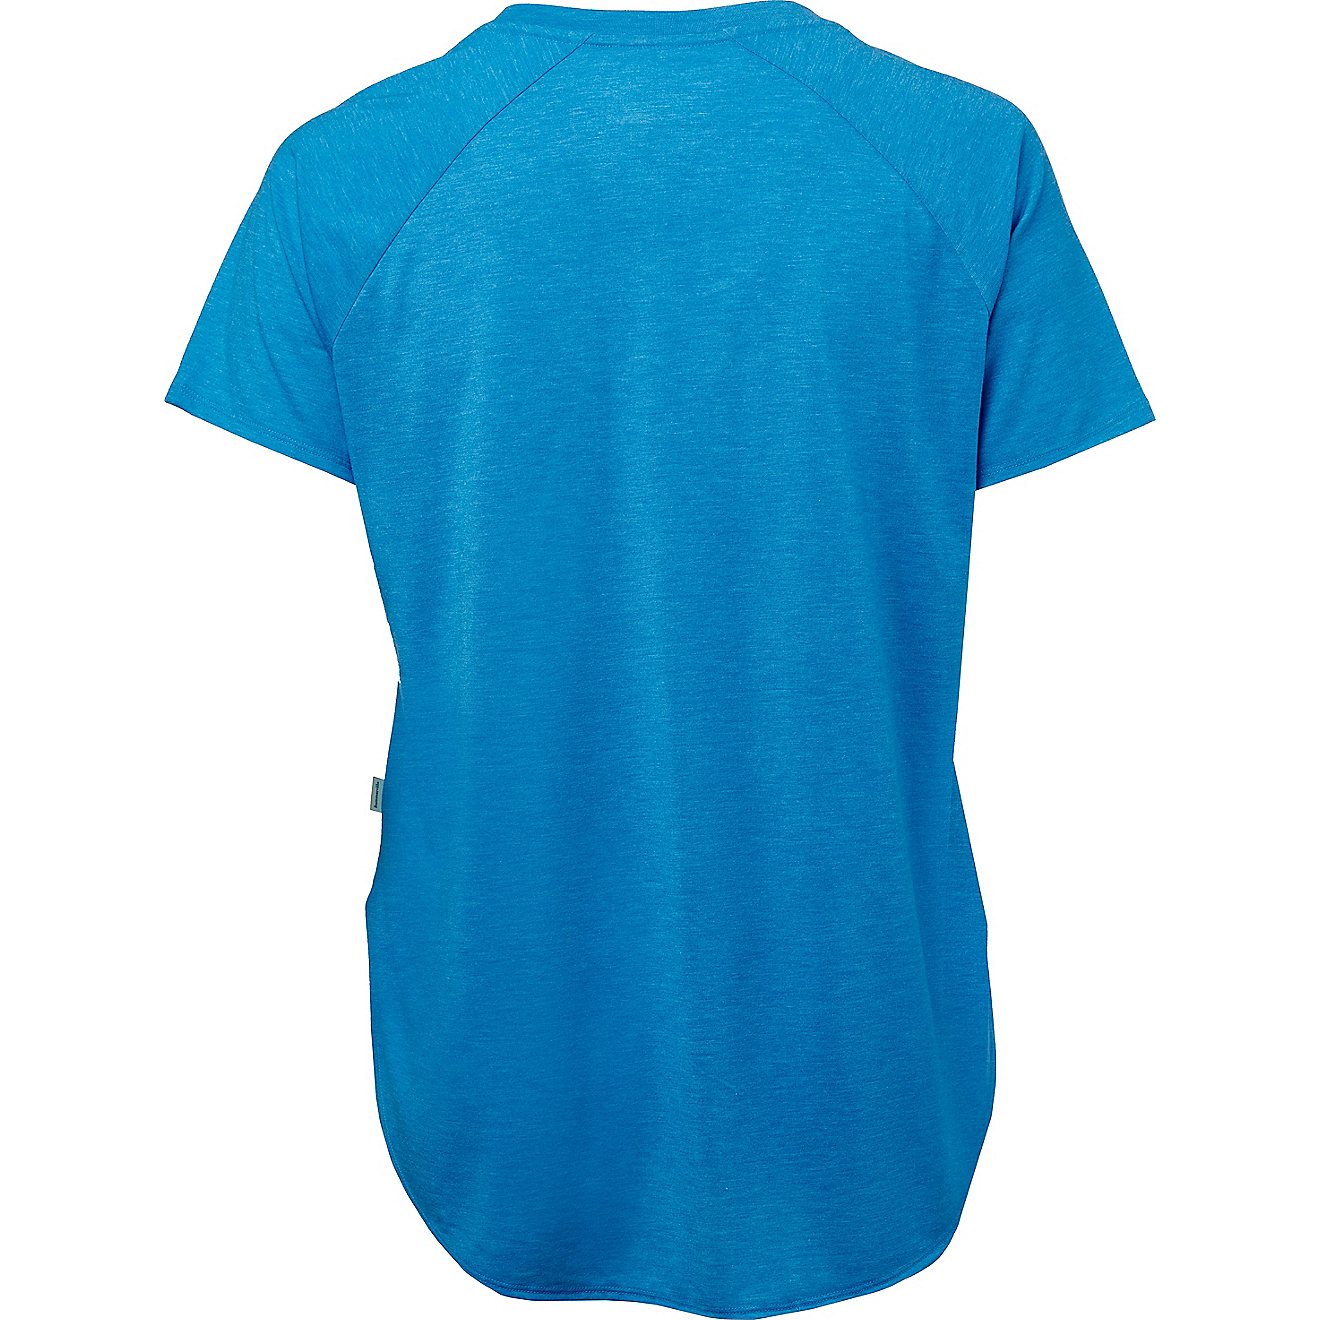 Magellan Outdoors Women's Summerville Plus Size T-shirt                                                                          - view number 2